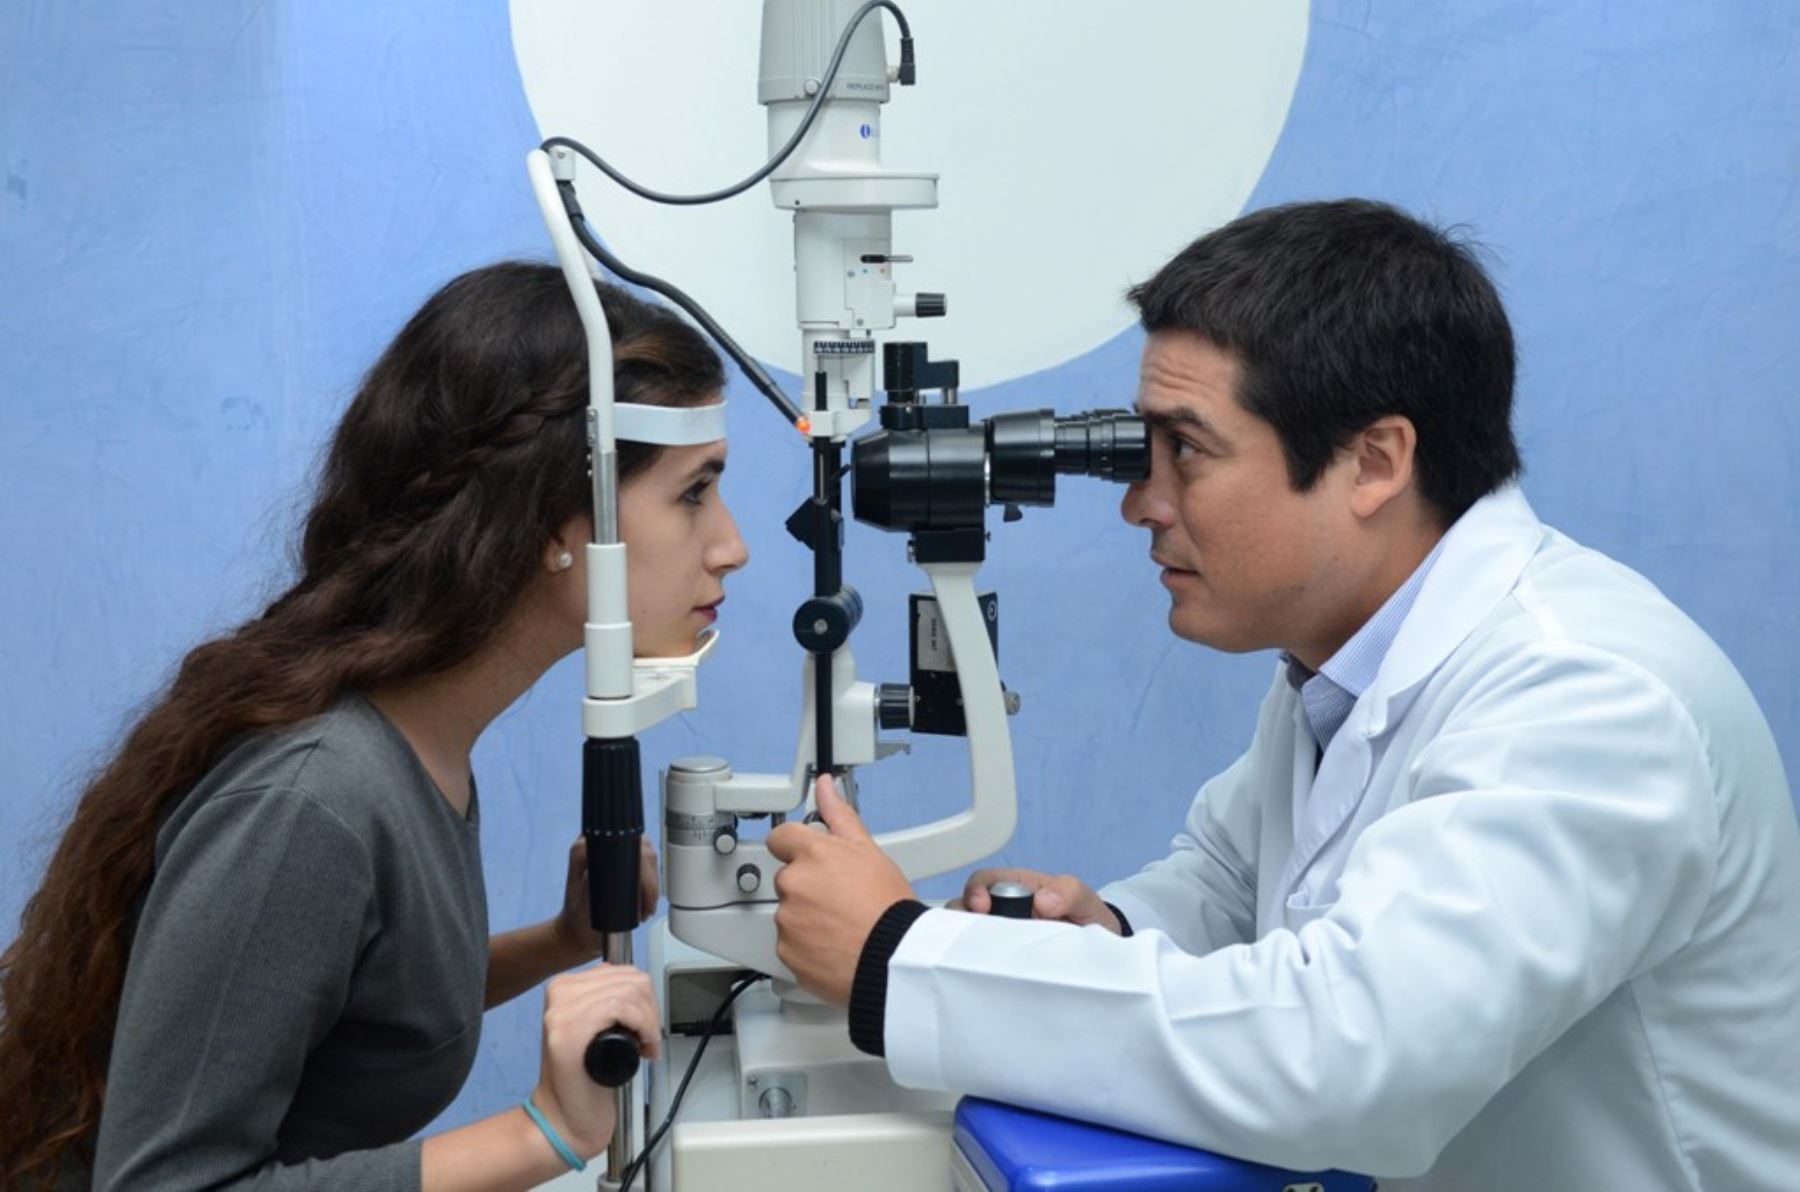 De cada 10 pacientes que asisten a consultas oftalmológicas, 8 presentan el síndrome de ojo seco. Foto: ANDINA/Difusión.